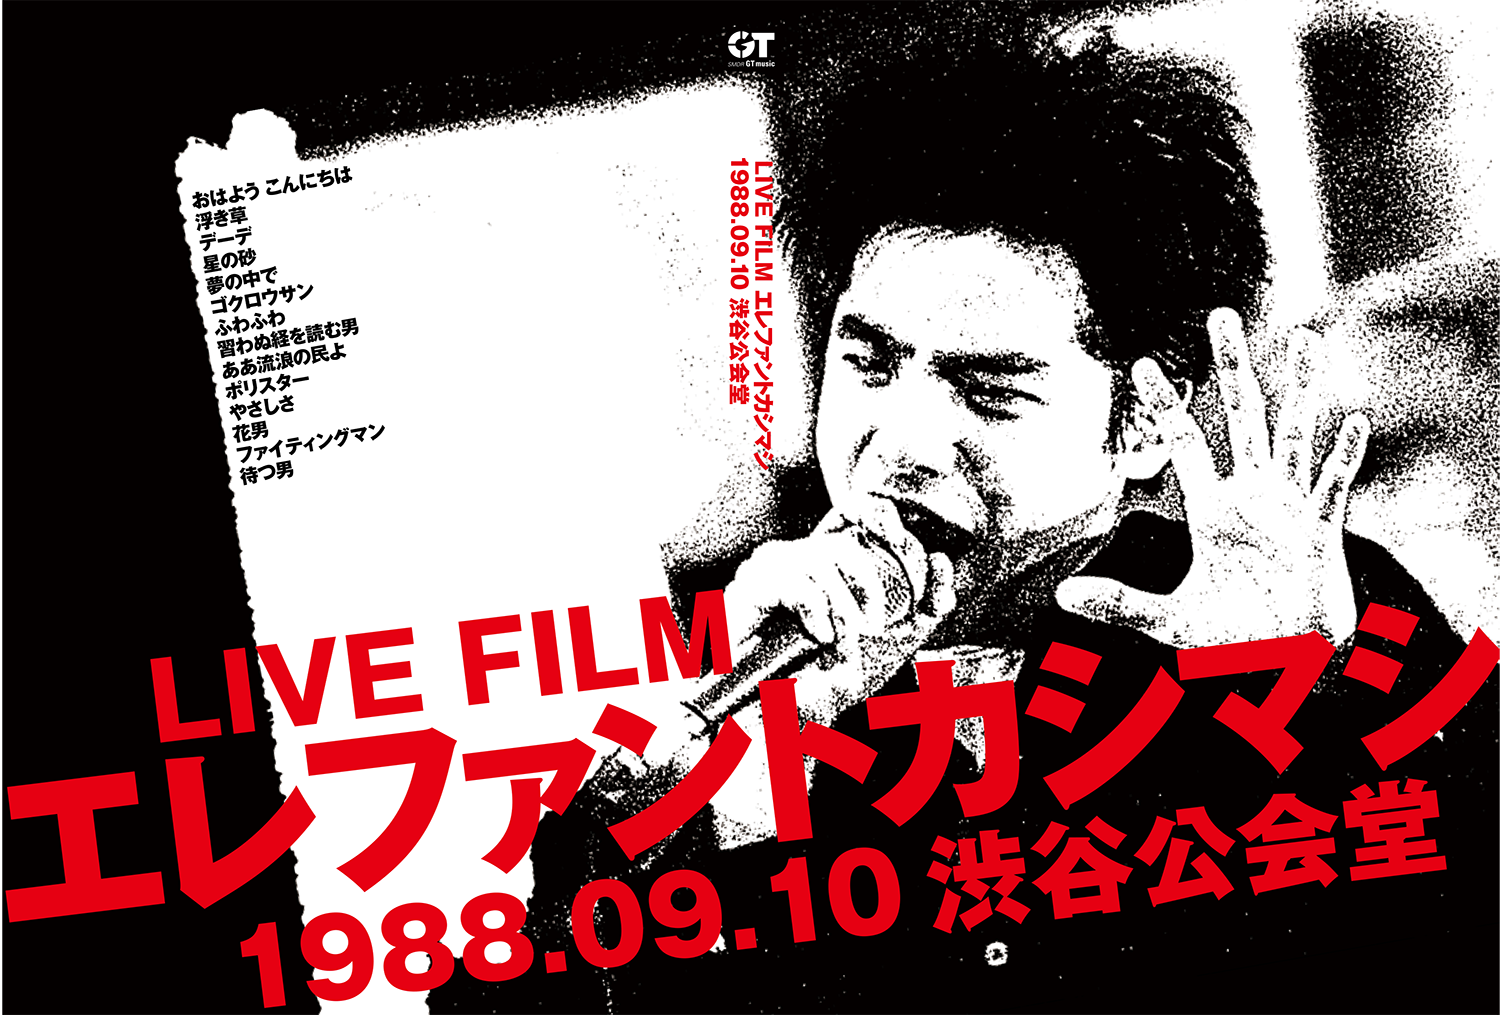 DVD『LIVE FILM エレファントカシマシ 1988.09.10渋谷公会堂』